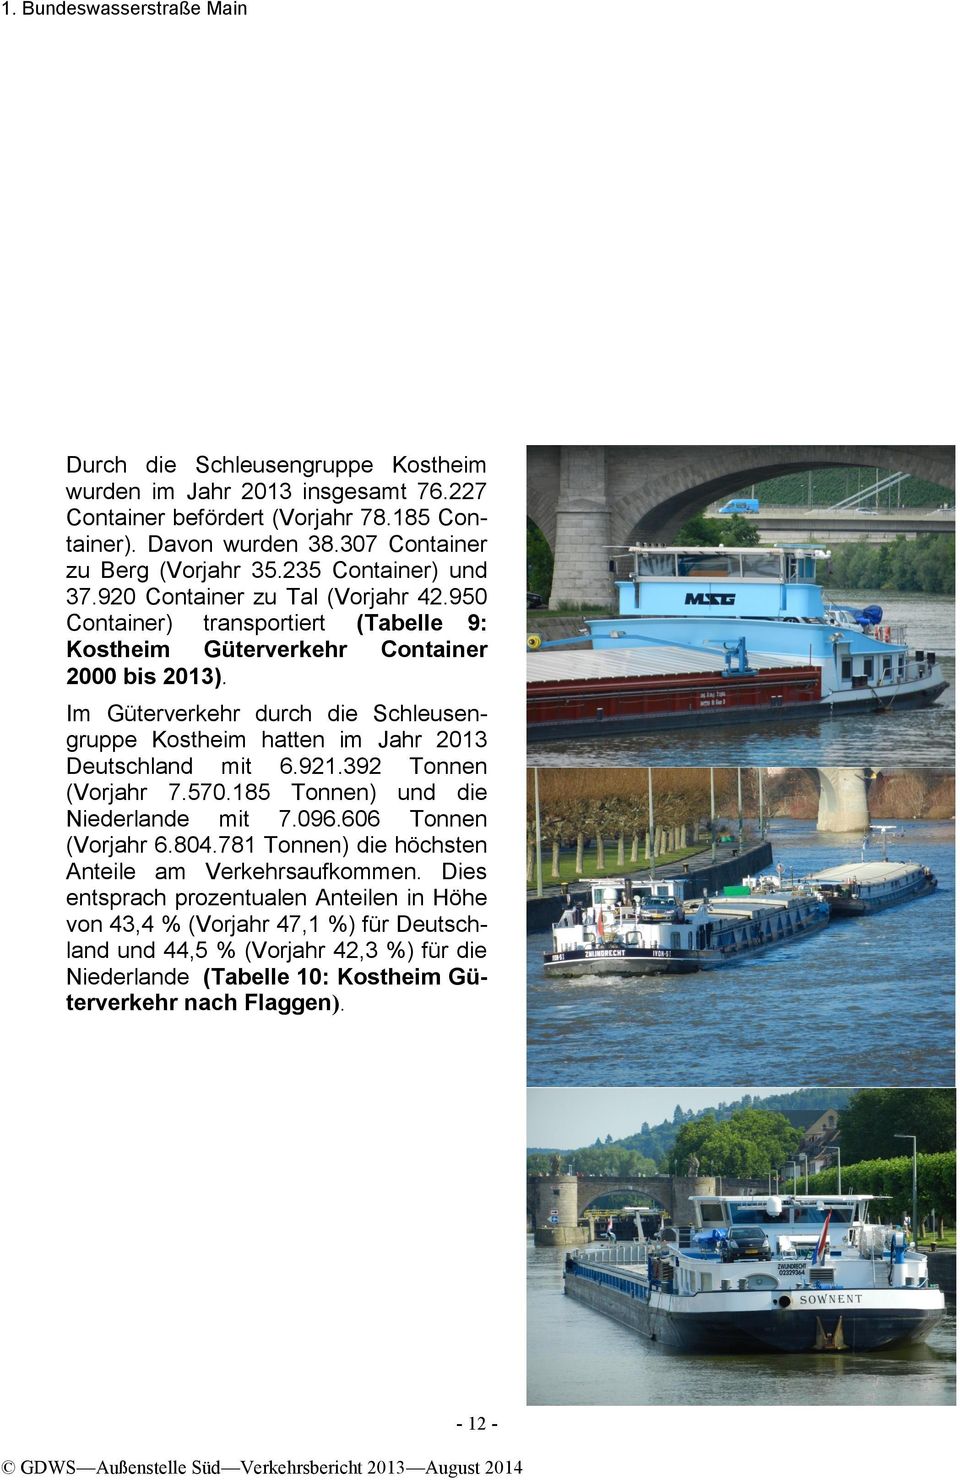 Im Güterverkehr durch die Schleusengruppe Kostheim hatten im Jahr 2013 Deutschland mit 6.921.392 Tonnen (Vorjahr 7.570.185 Tonnen) und die Niederlande mit 7.096.606 Tonnen (Vorjahr 6.804.